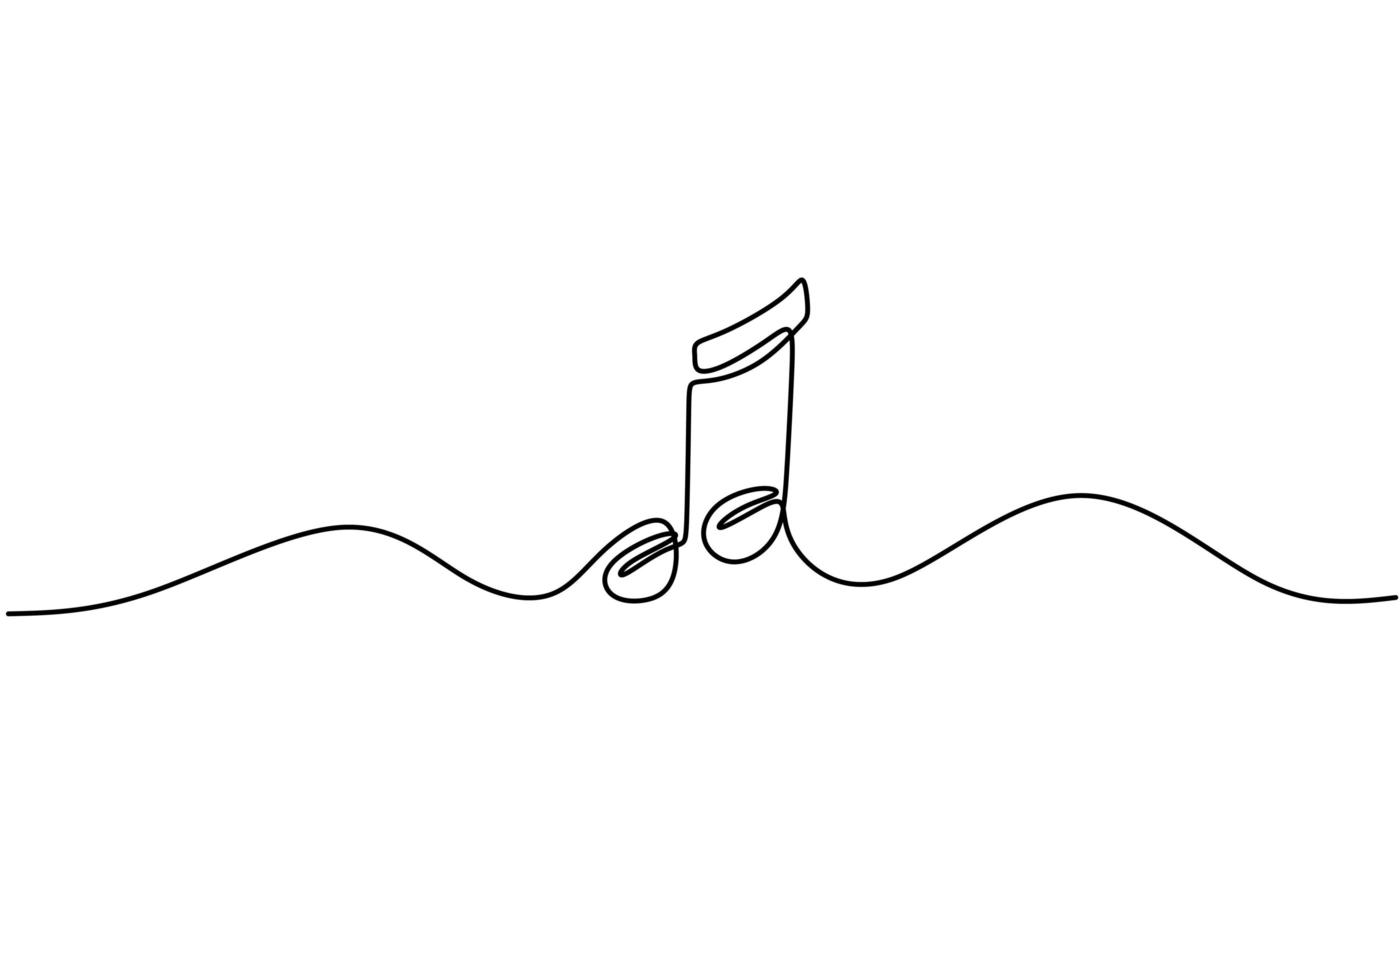 hele notitie vectorillustratie, enkele tekenstijl van een doorlopende lijn. minimalisme teken en symbool van muziek. vector